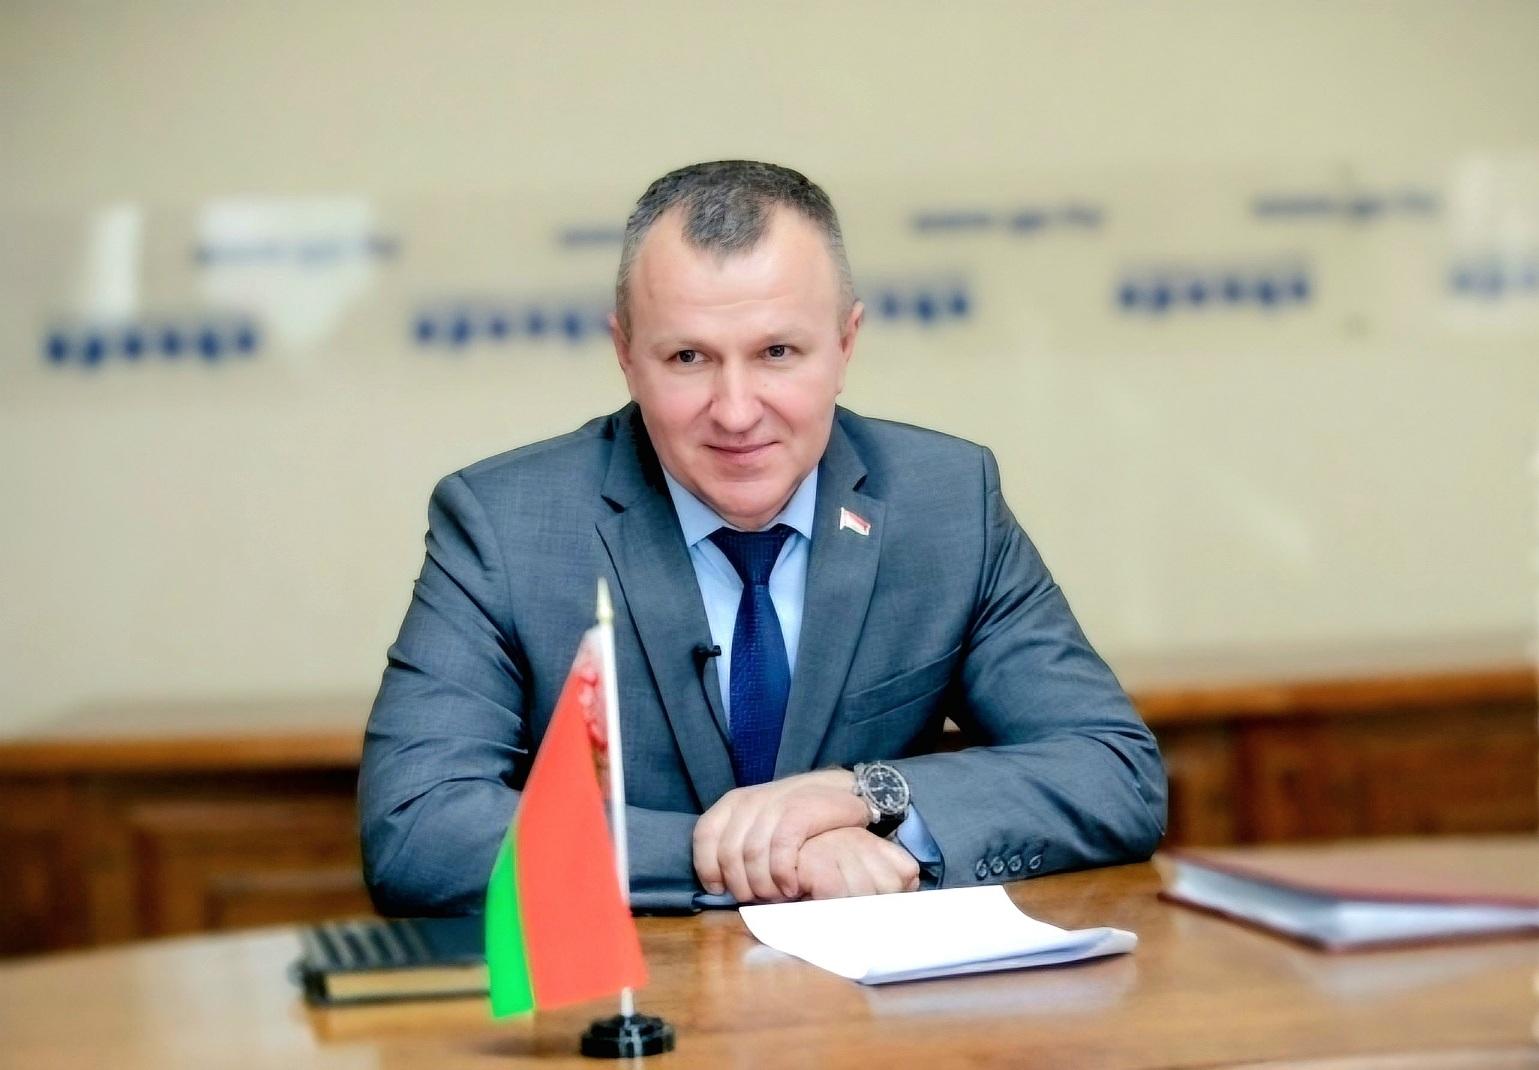 Владимир Антоненко, председатель Наровлянского районного исполнительного комитета: